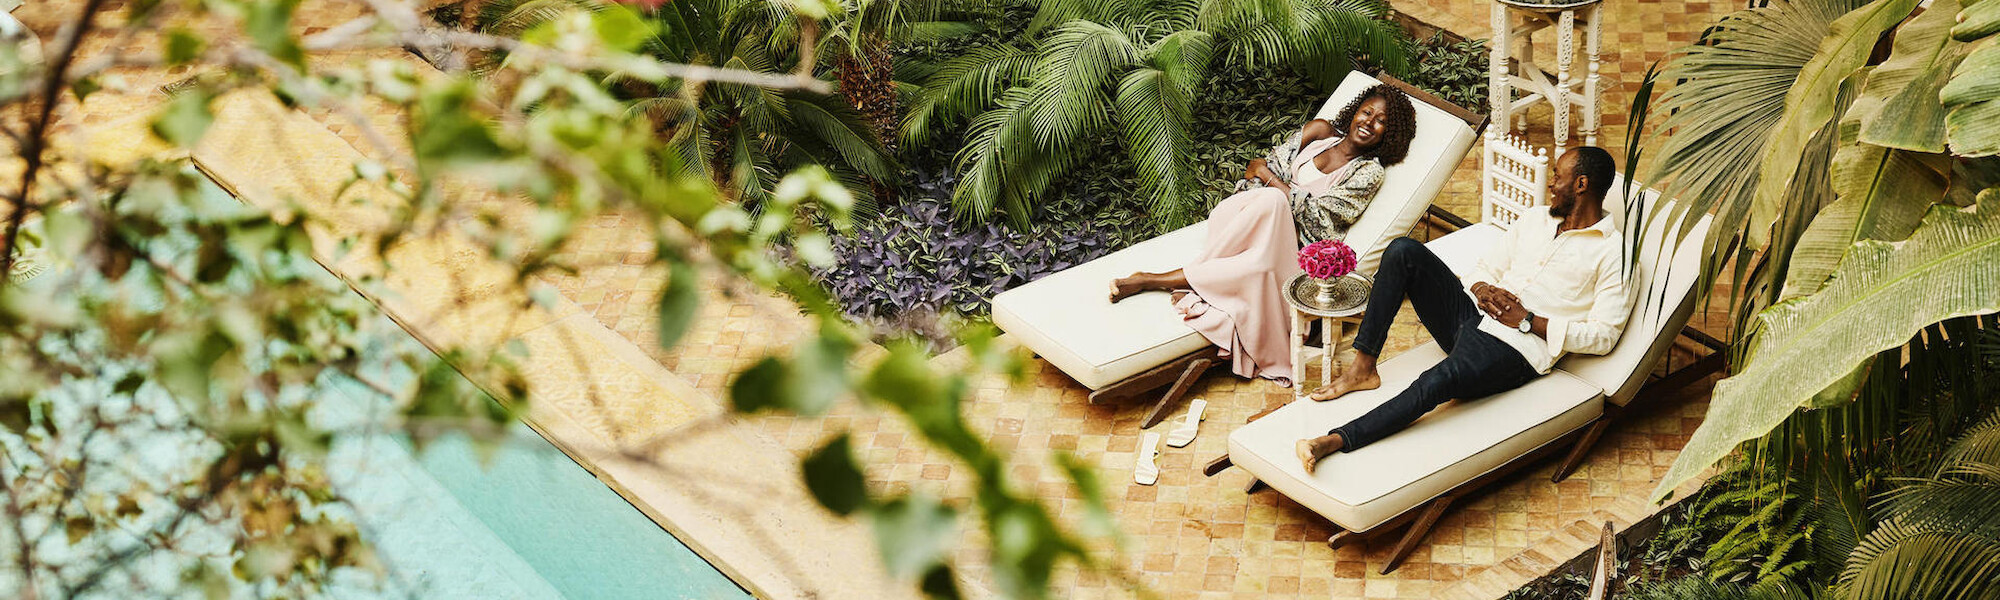 Dos personas están descansando en las sillas junto a la piscina rodeadas de exuberantes plantas tropicales, disfrutando de un momento de relax.